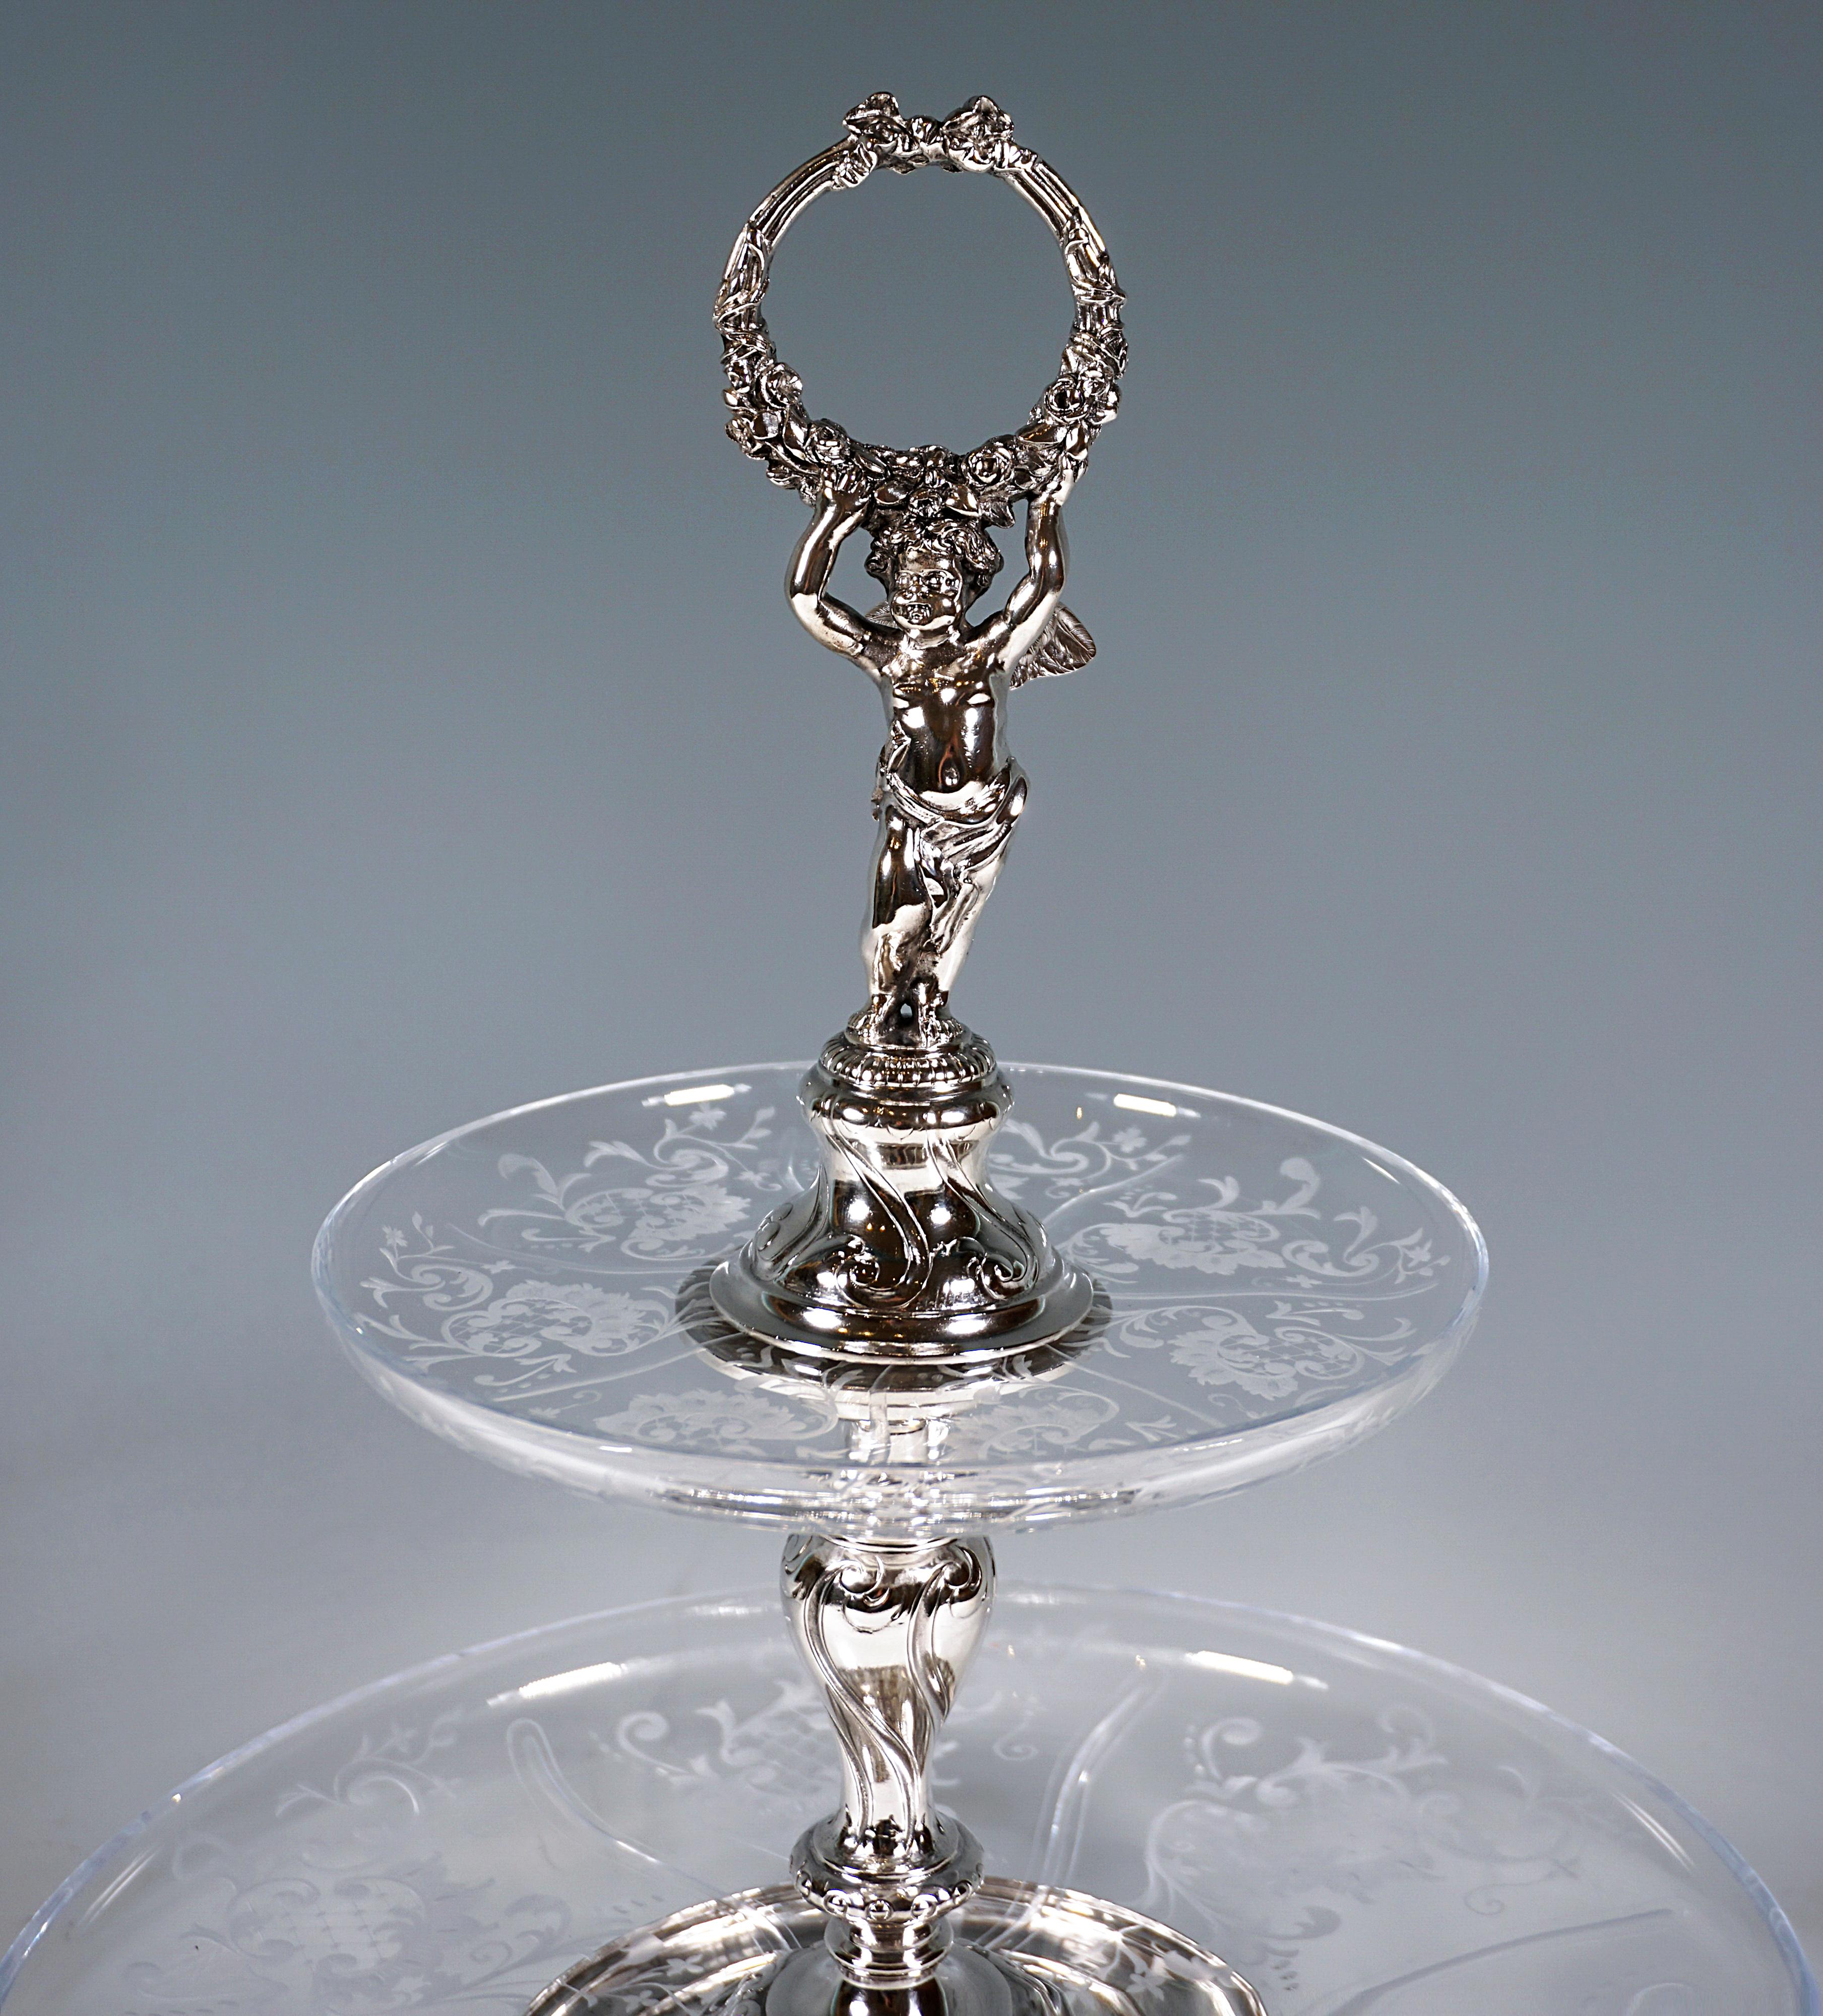 Austrian Viennese Silver & Glass Art Nouveau Table Étagère by Würbel & Szokally, Ca. 1900 For Sale